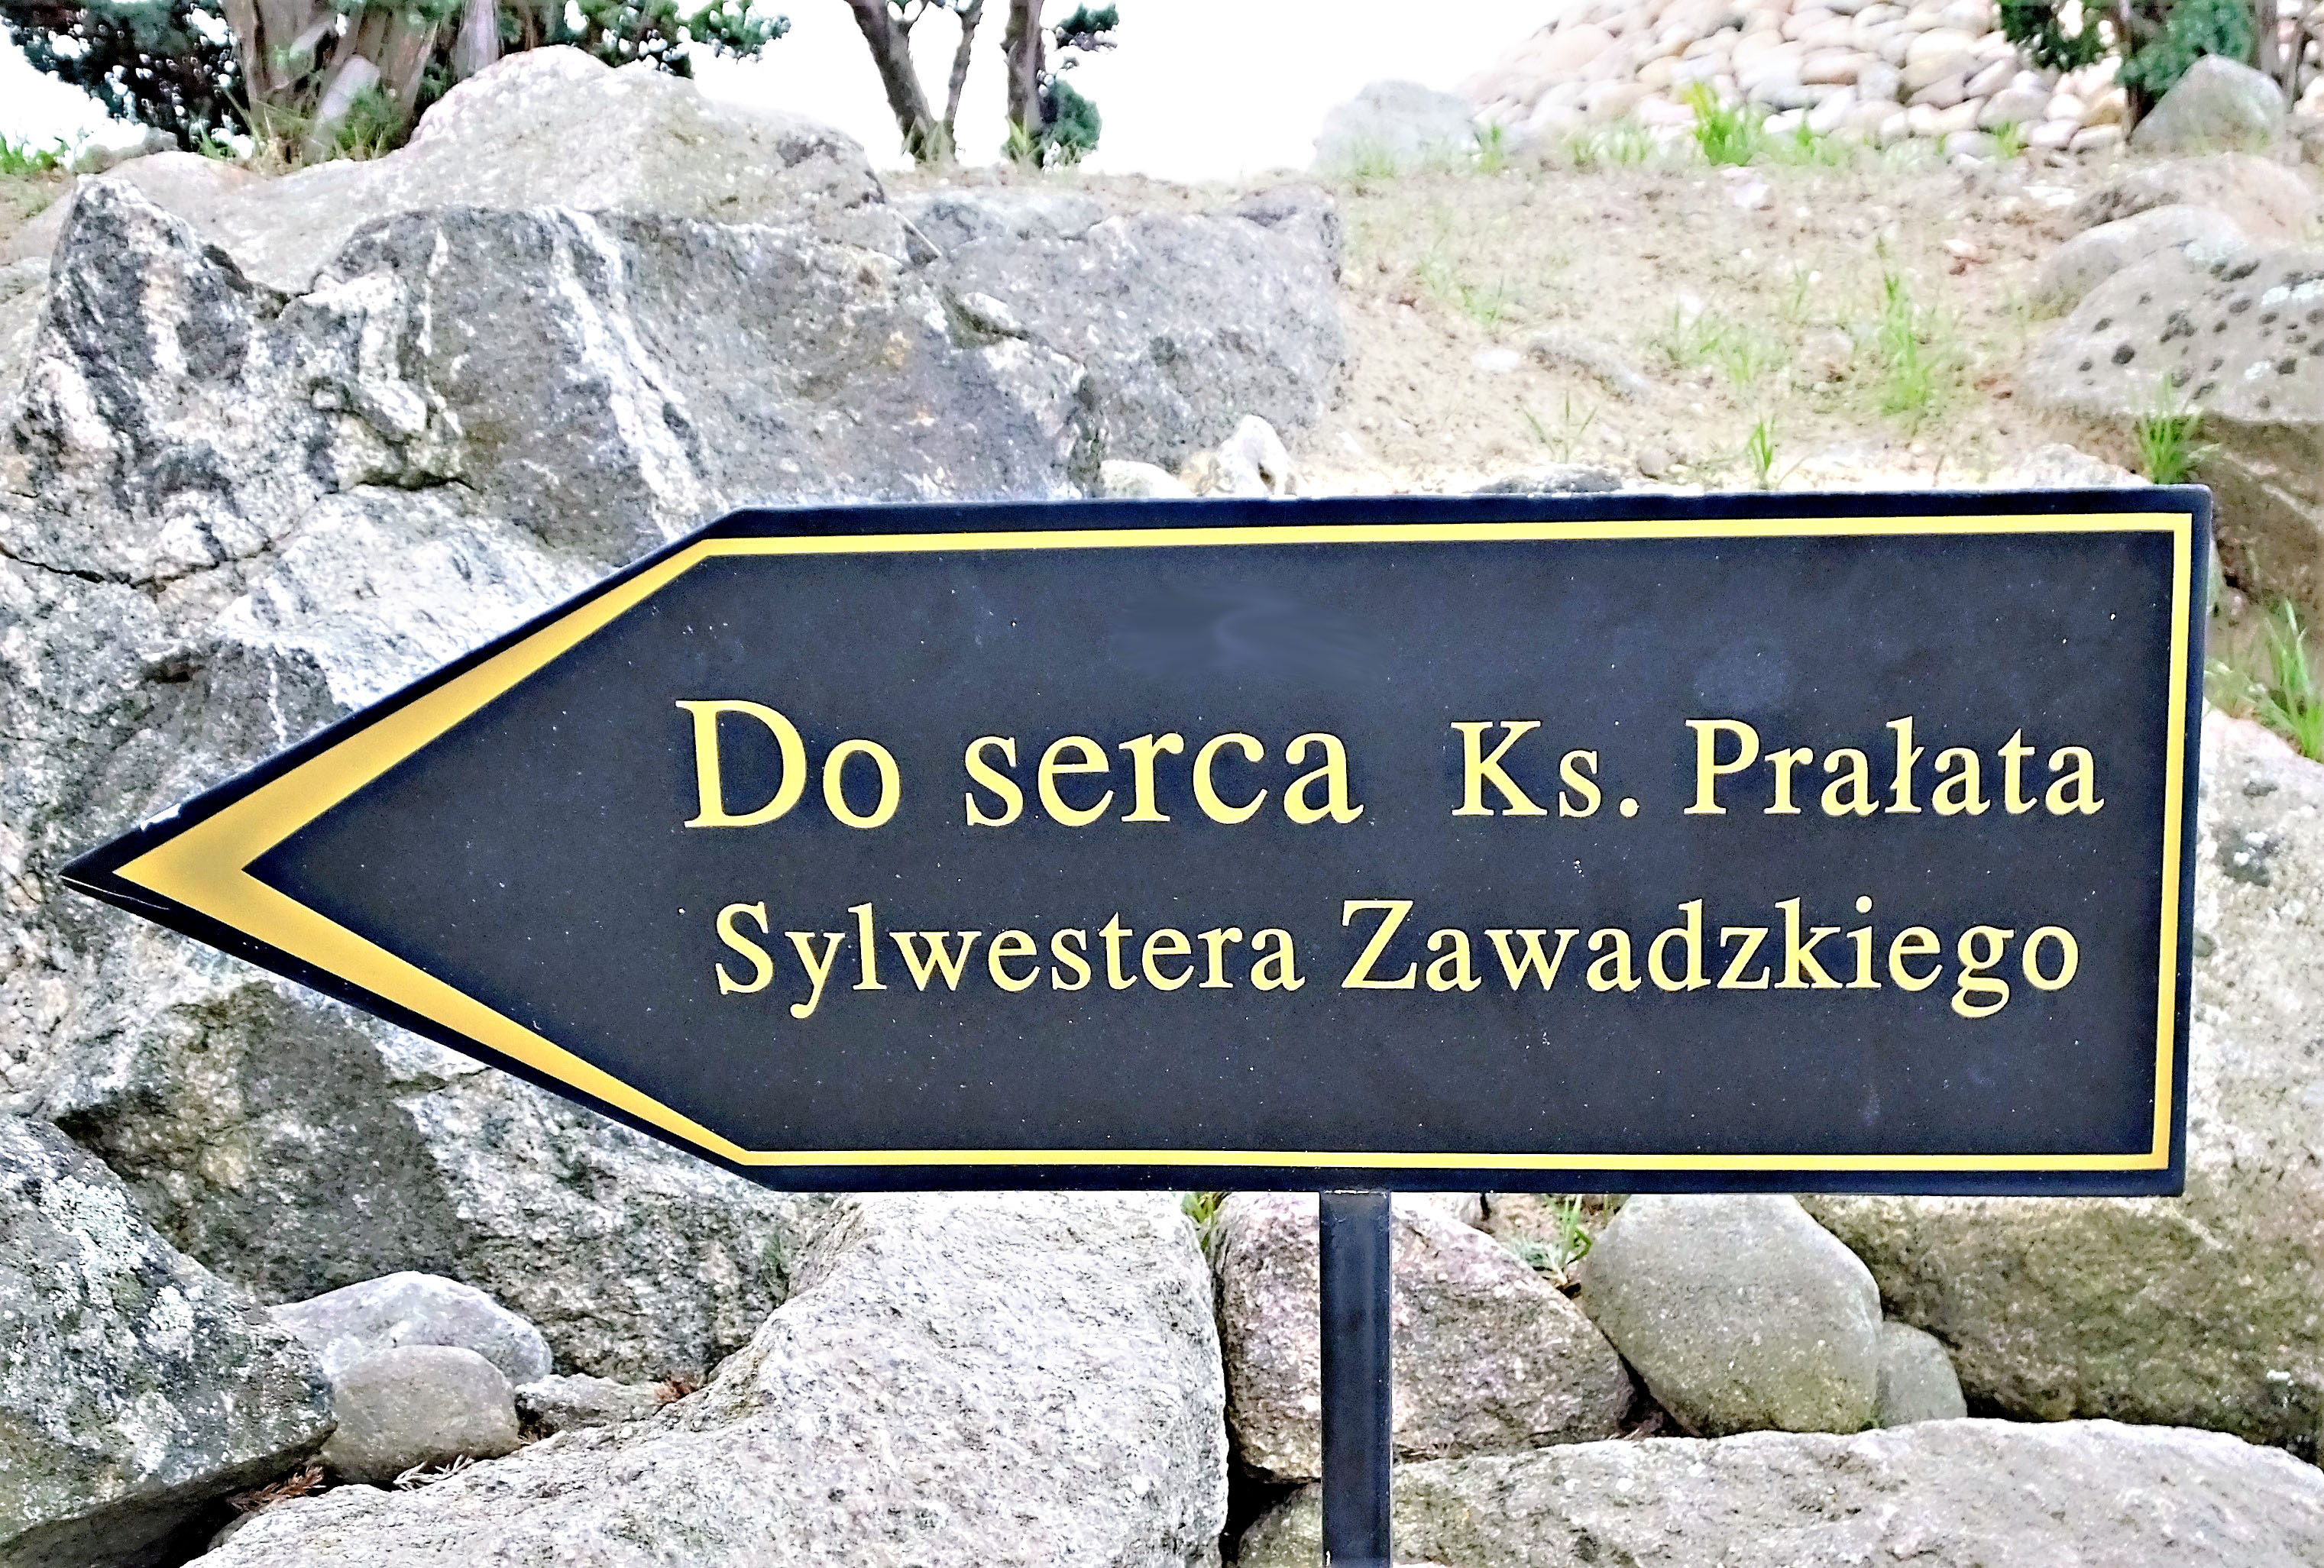 Dort ist das Herz des Prälaten Sylwester Sawadzki beigesetzt.